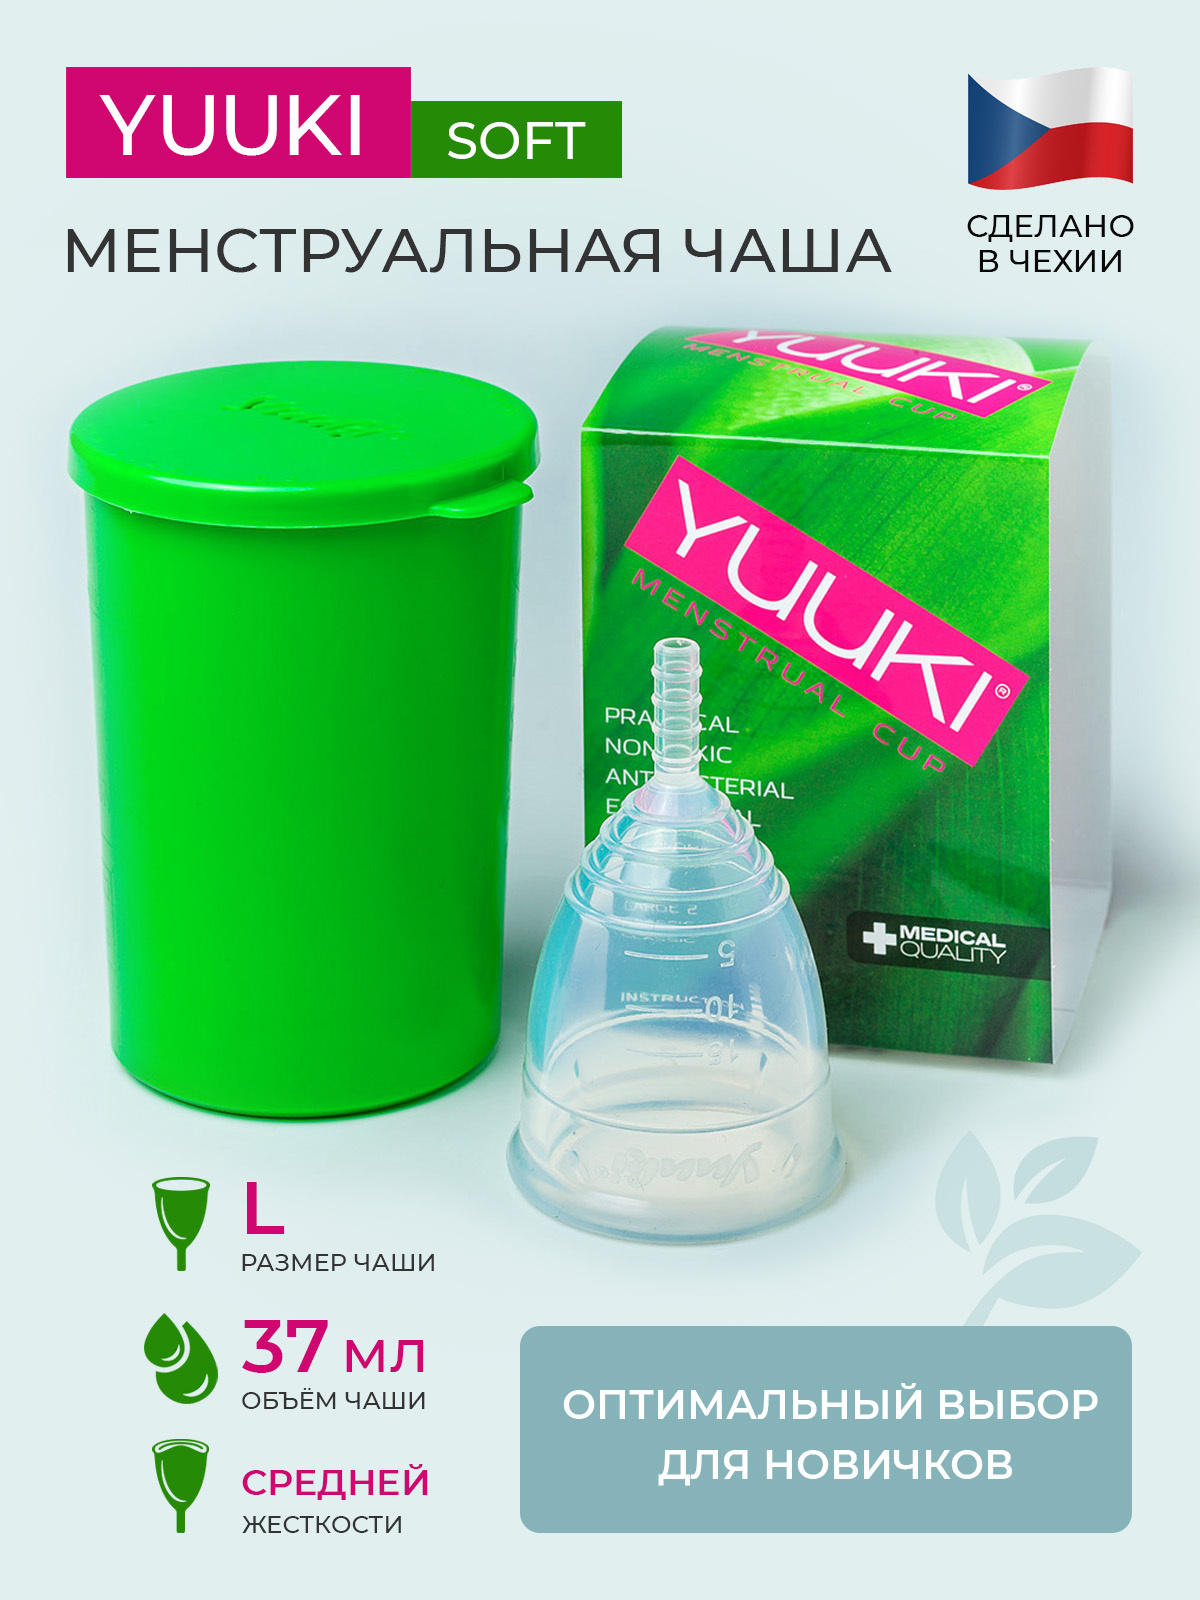 Менструальная чаша YUUKI SOFT LARGE 2 (L - после 30 лет или рожавшим либо значительные выделения)